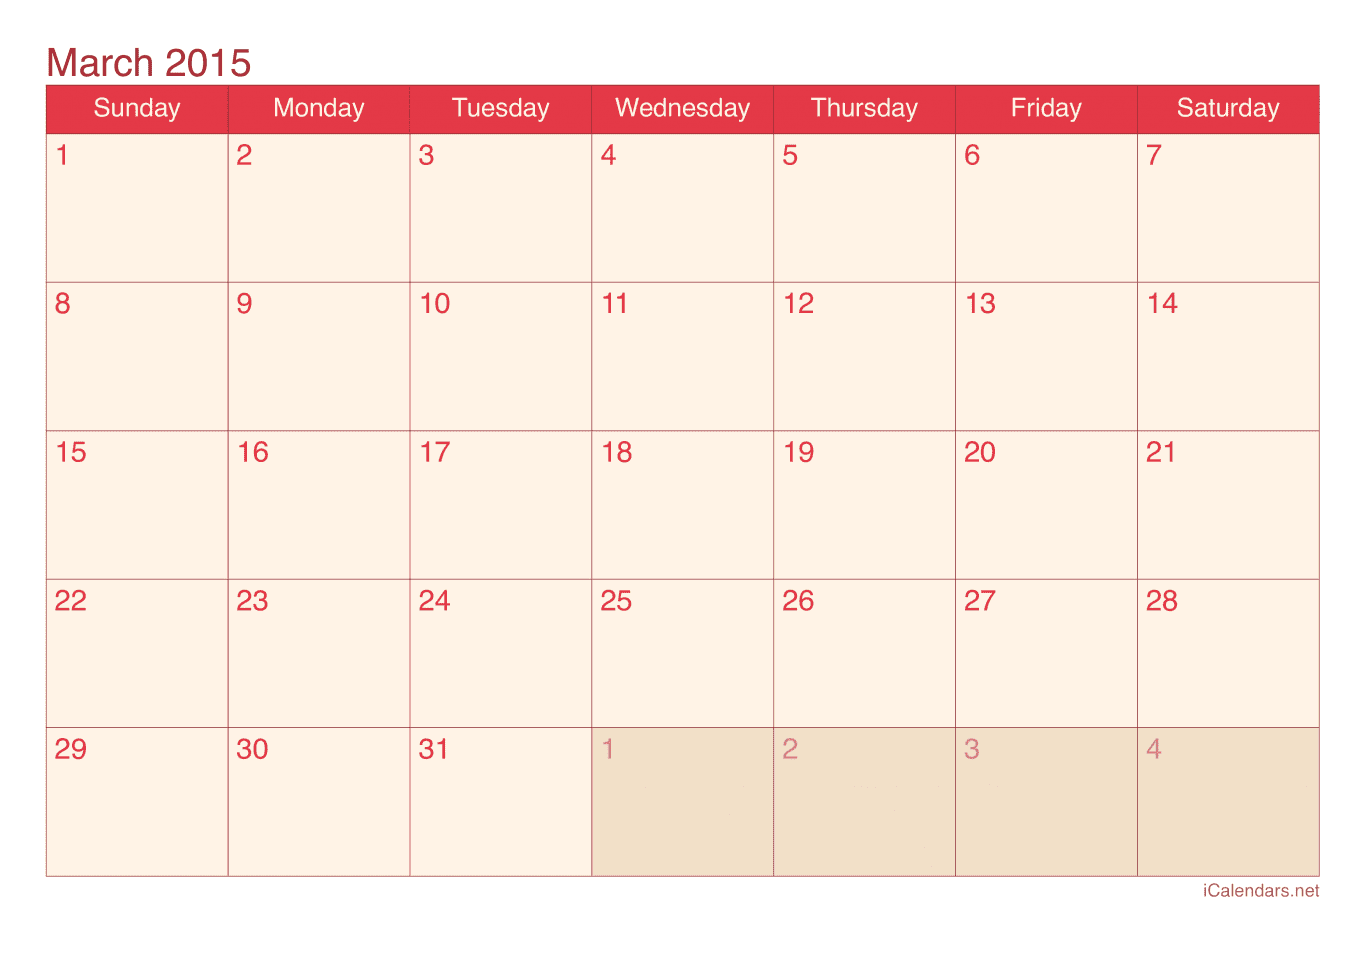 2015 March Calendar - Cherry